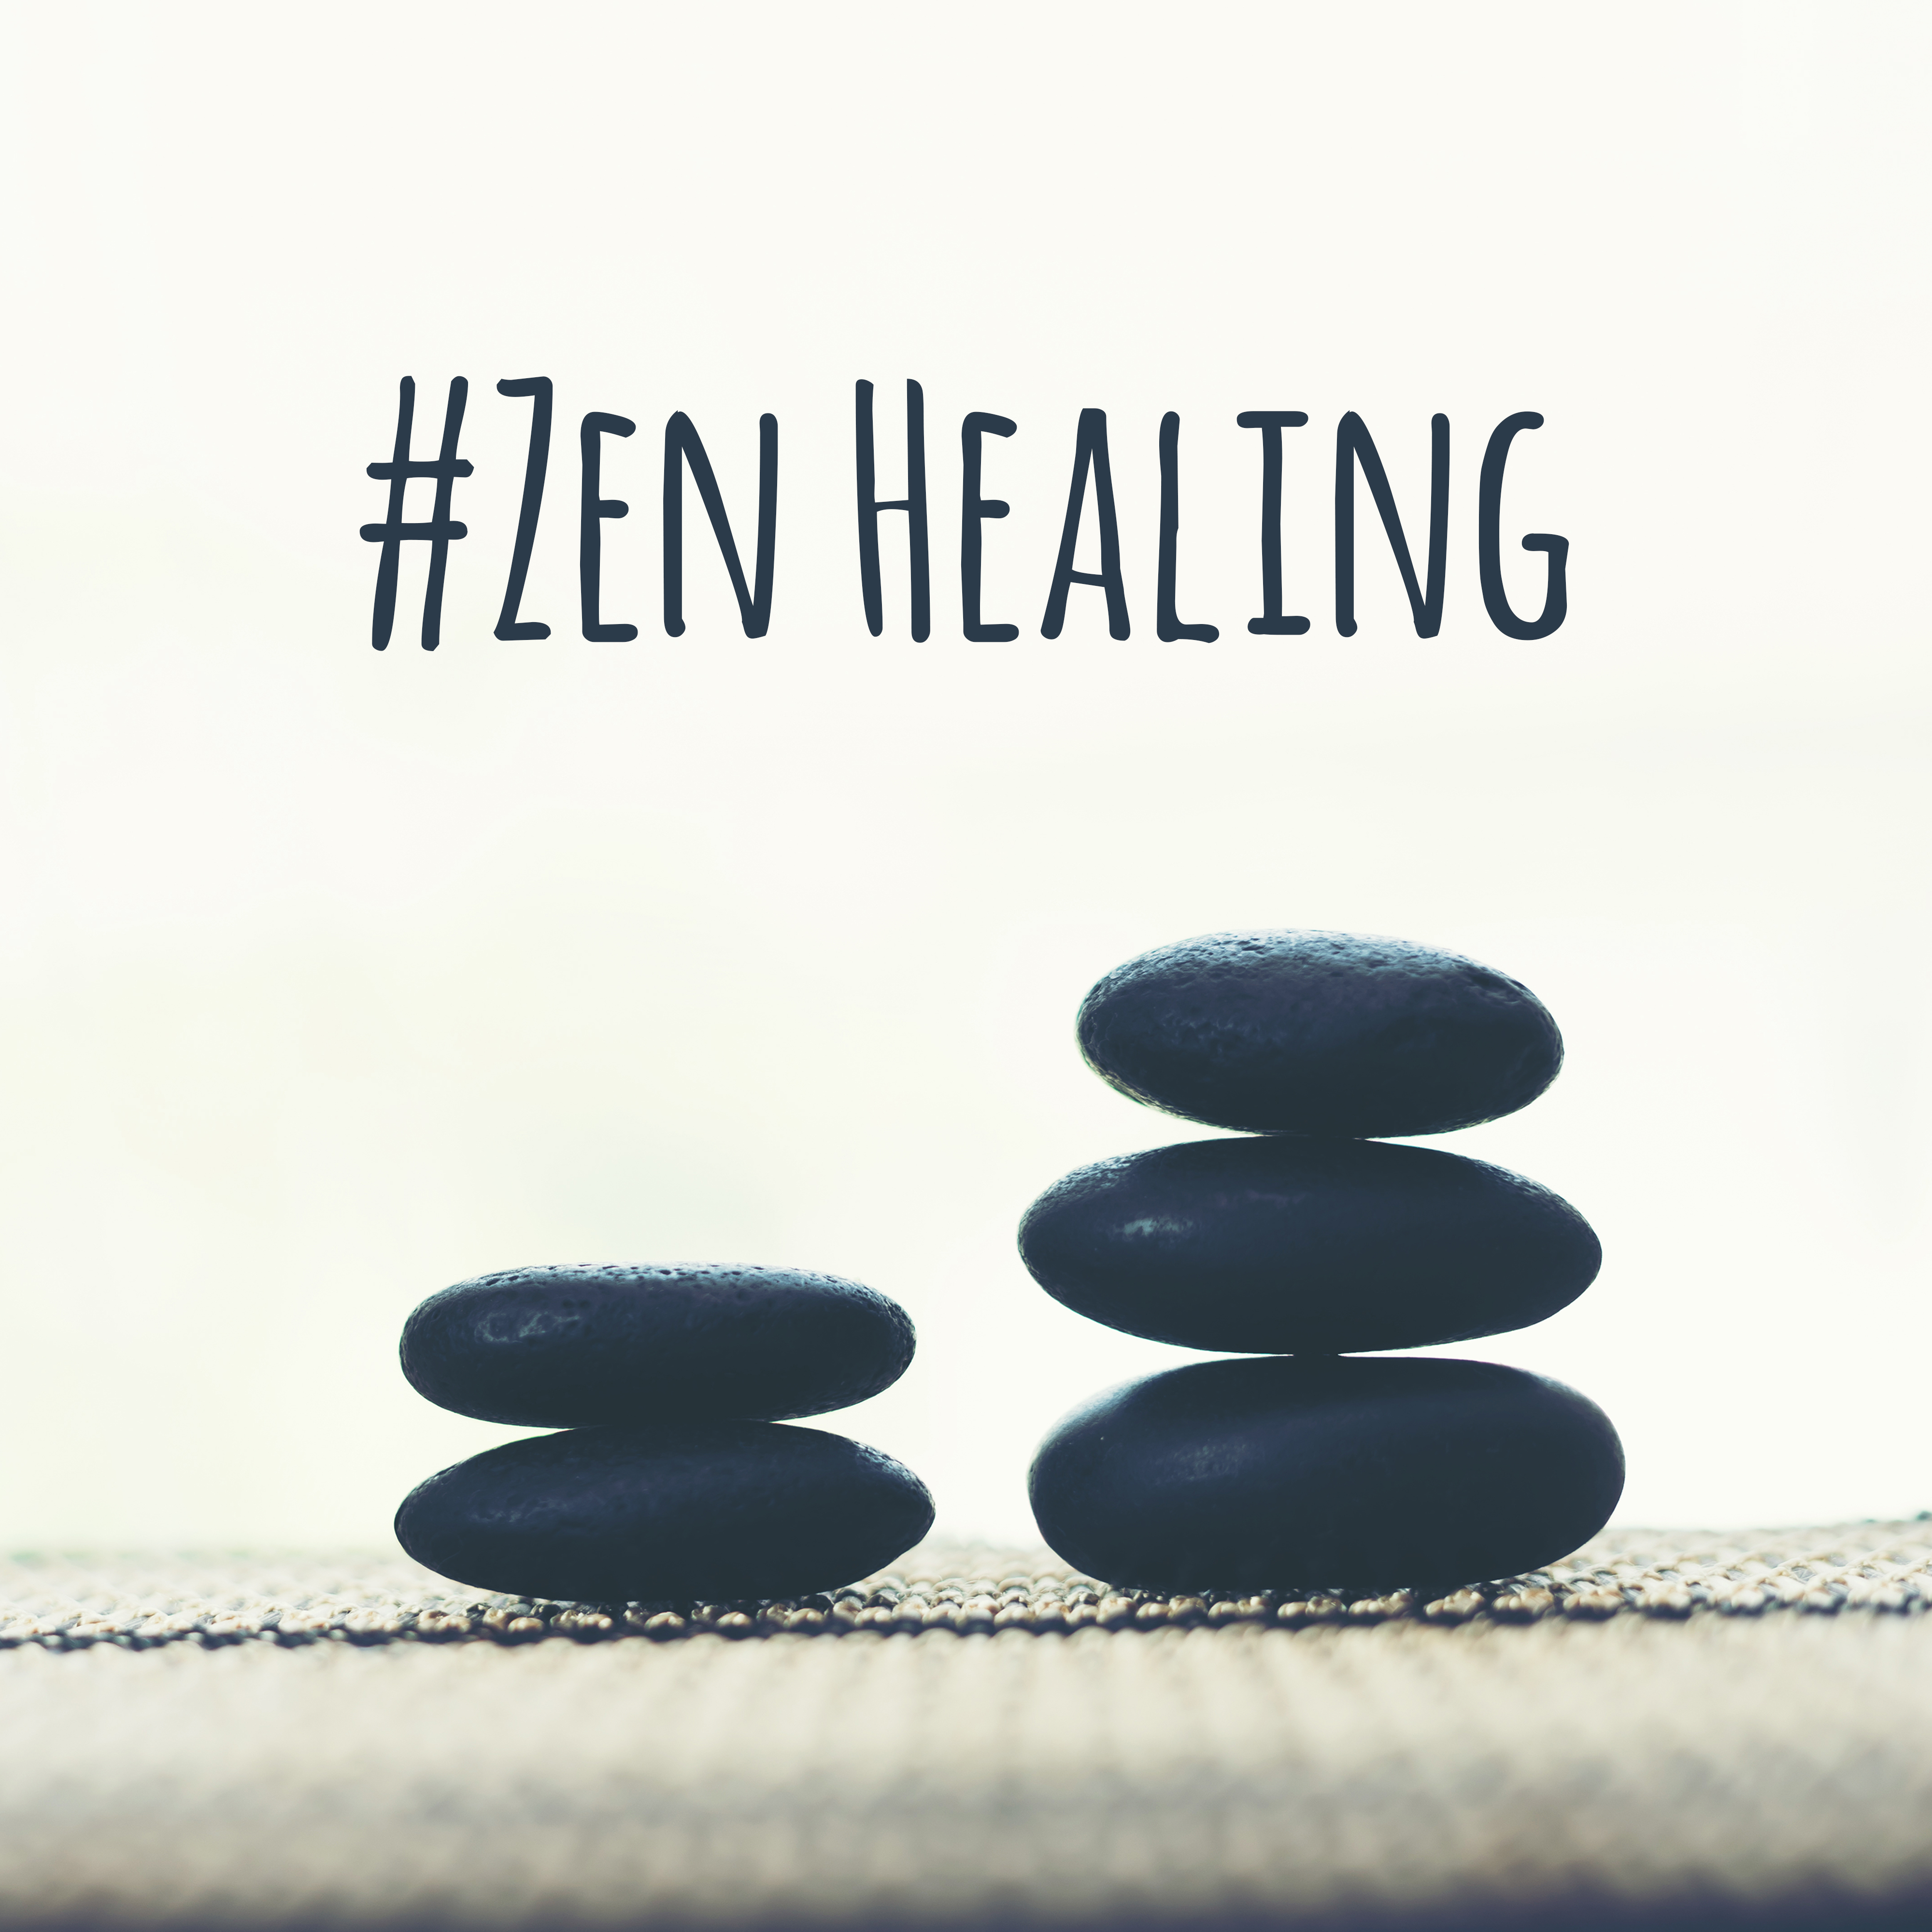 #Zen Healing